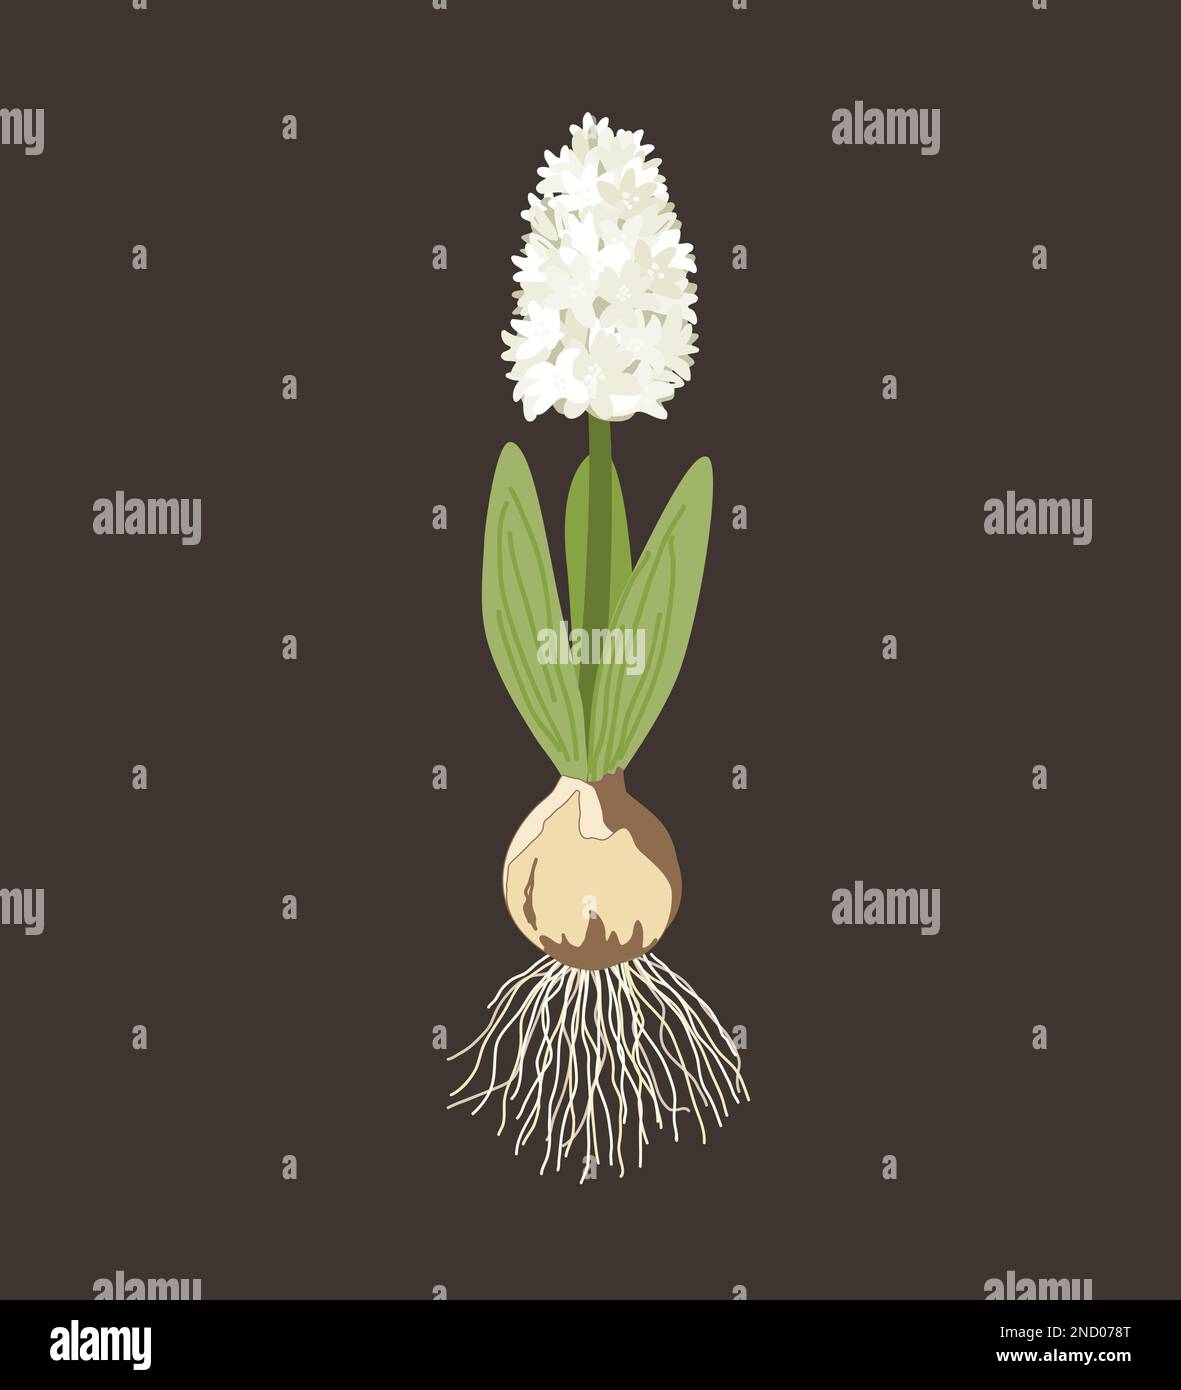 Giacinto bianco con cipolla, radici, foglie e fiori isolati su fondo scuro. Illustrazione vettoriale. Illustrazione Vettoriale